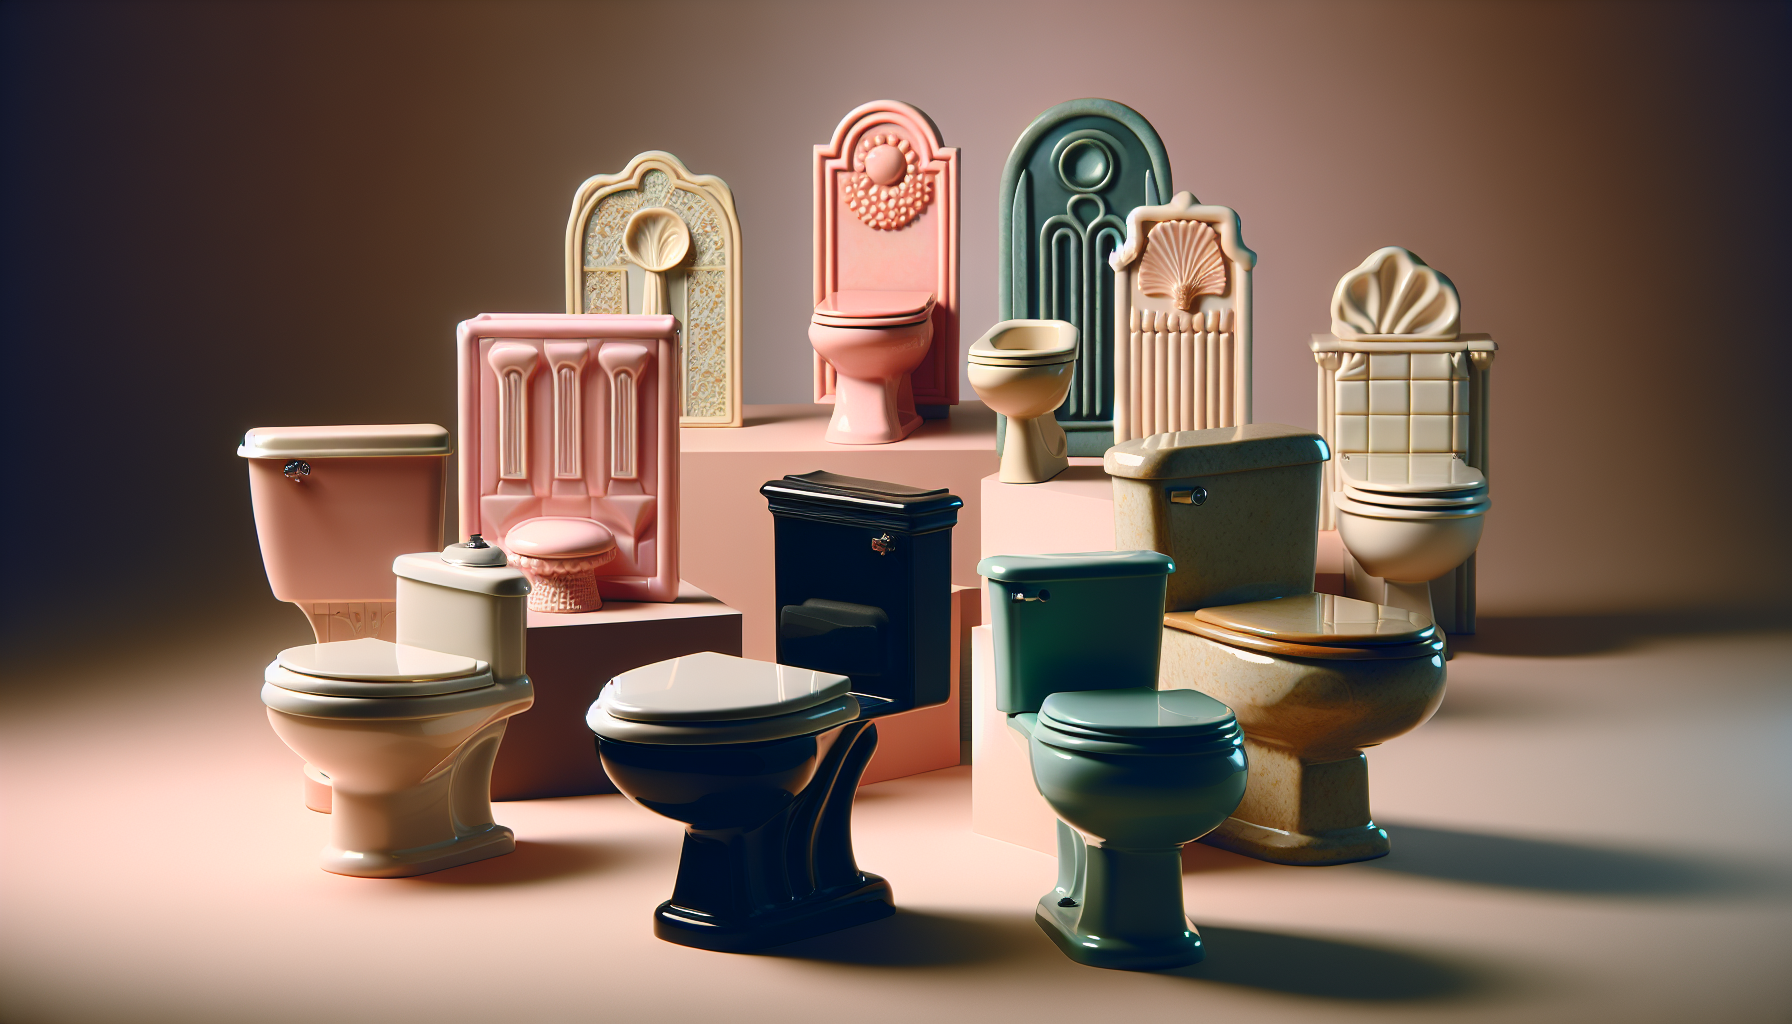 Formen, Farben und Materialien von Retro-Toiletten